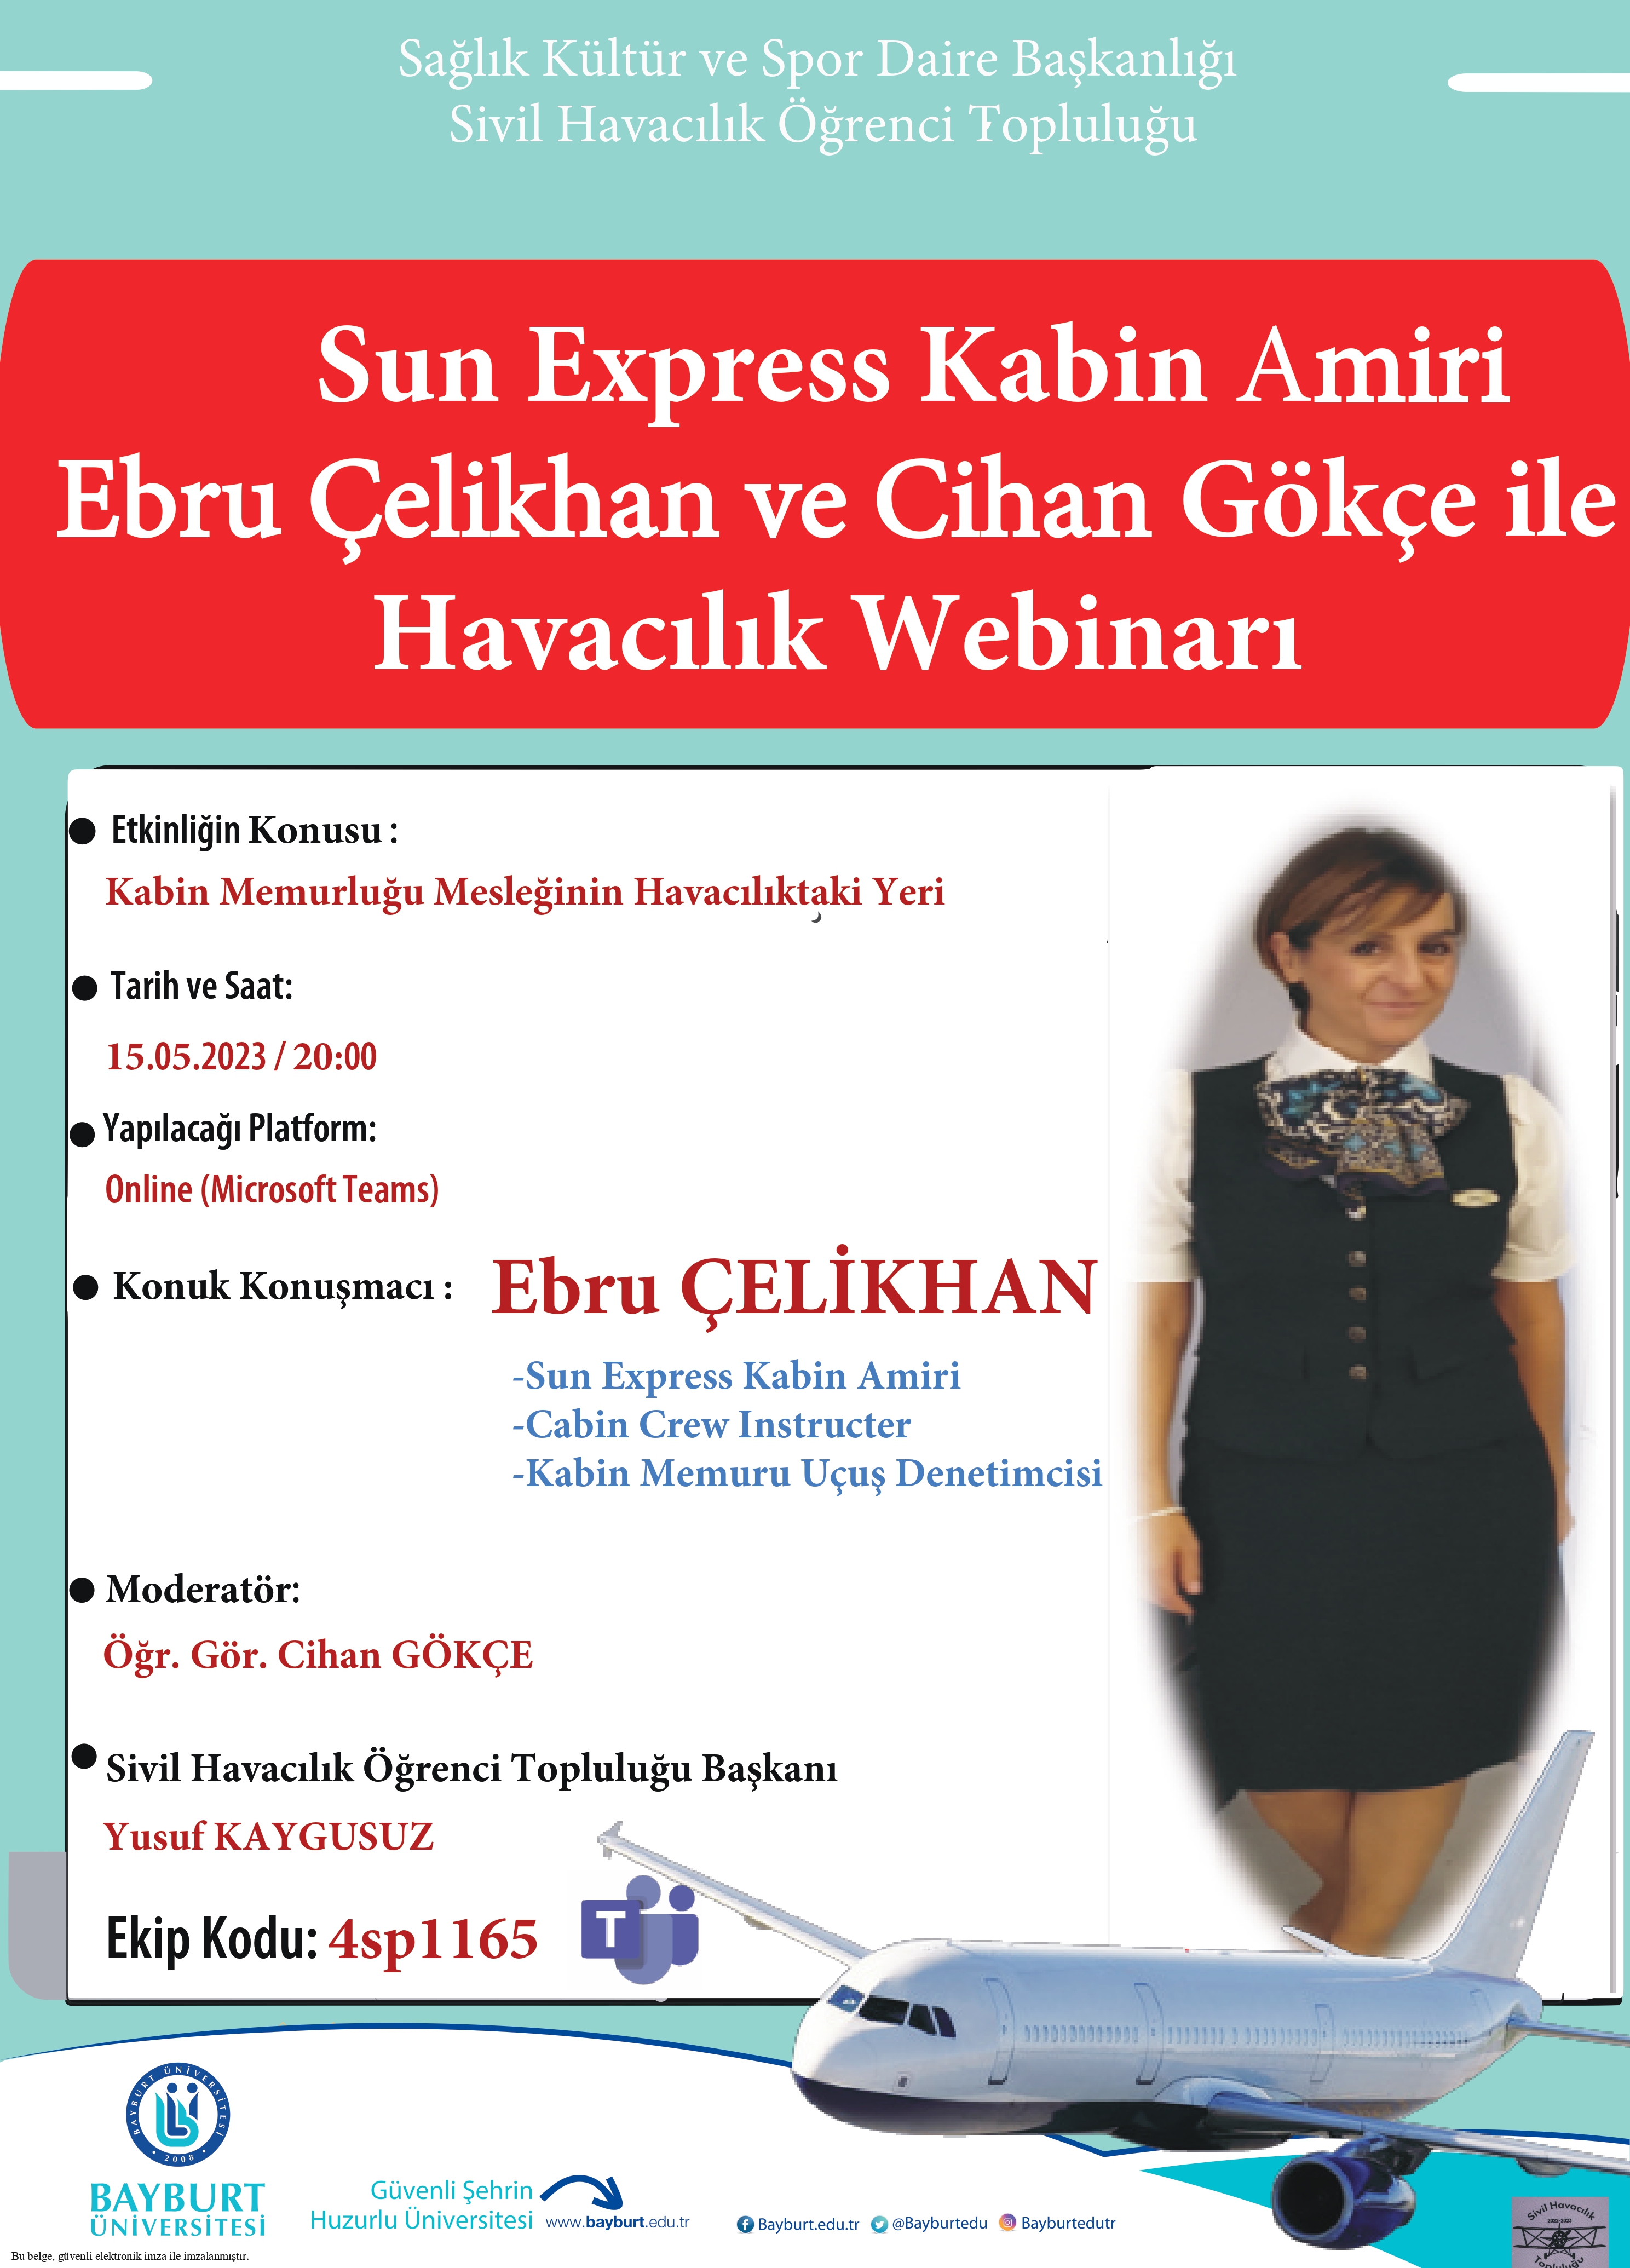 Sun Express Kabin Amiri Ebru Çelikhan ve Öğr. Gör. Cihan Gökçe ile Havacılık Webinarı